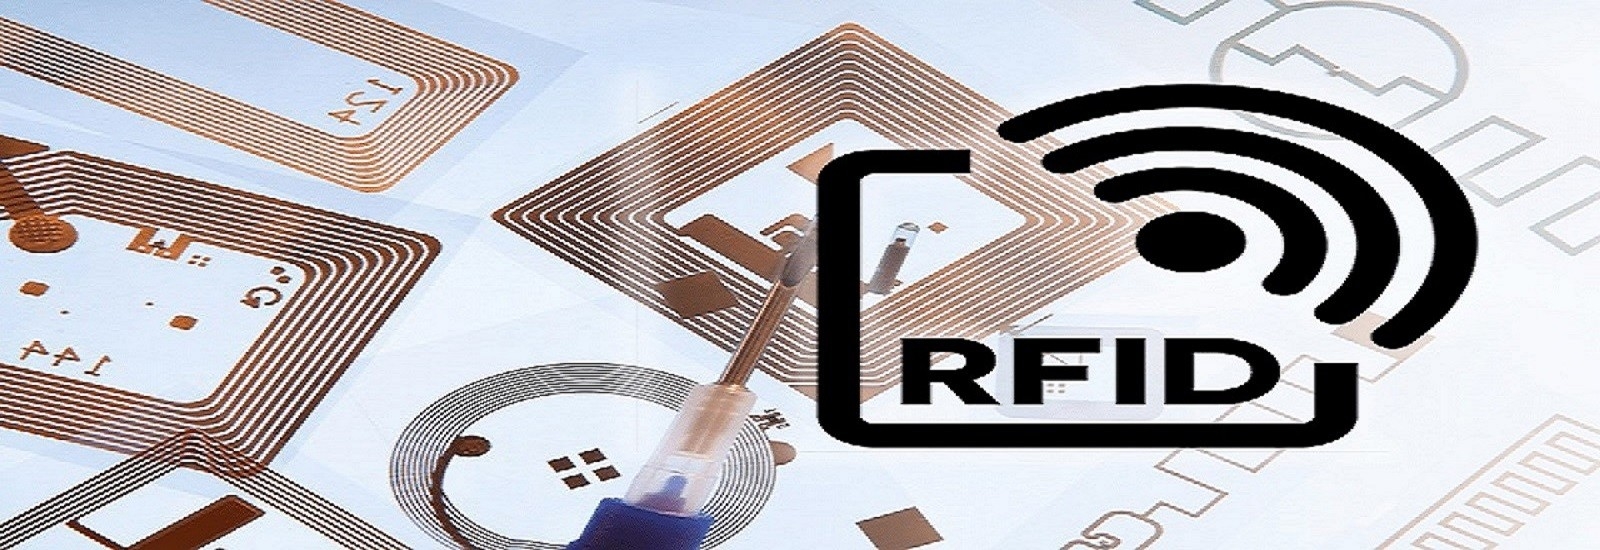 RFID Label Tags